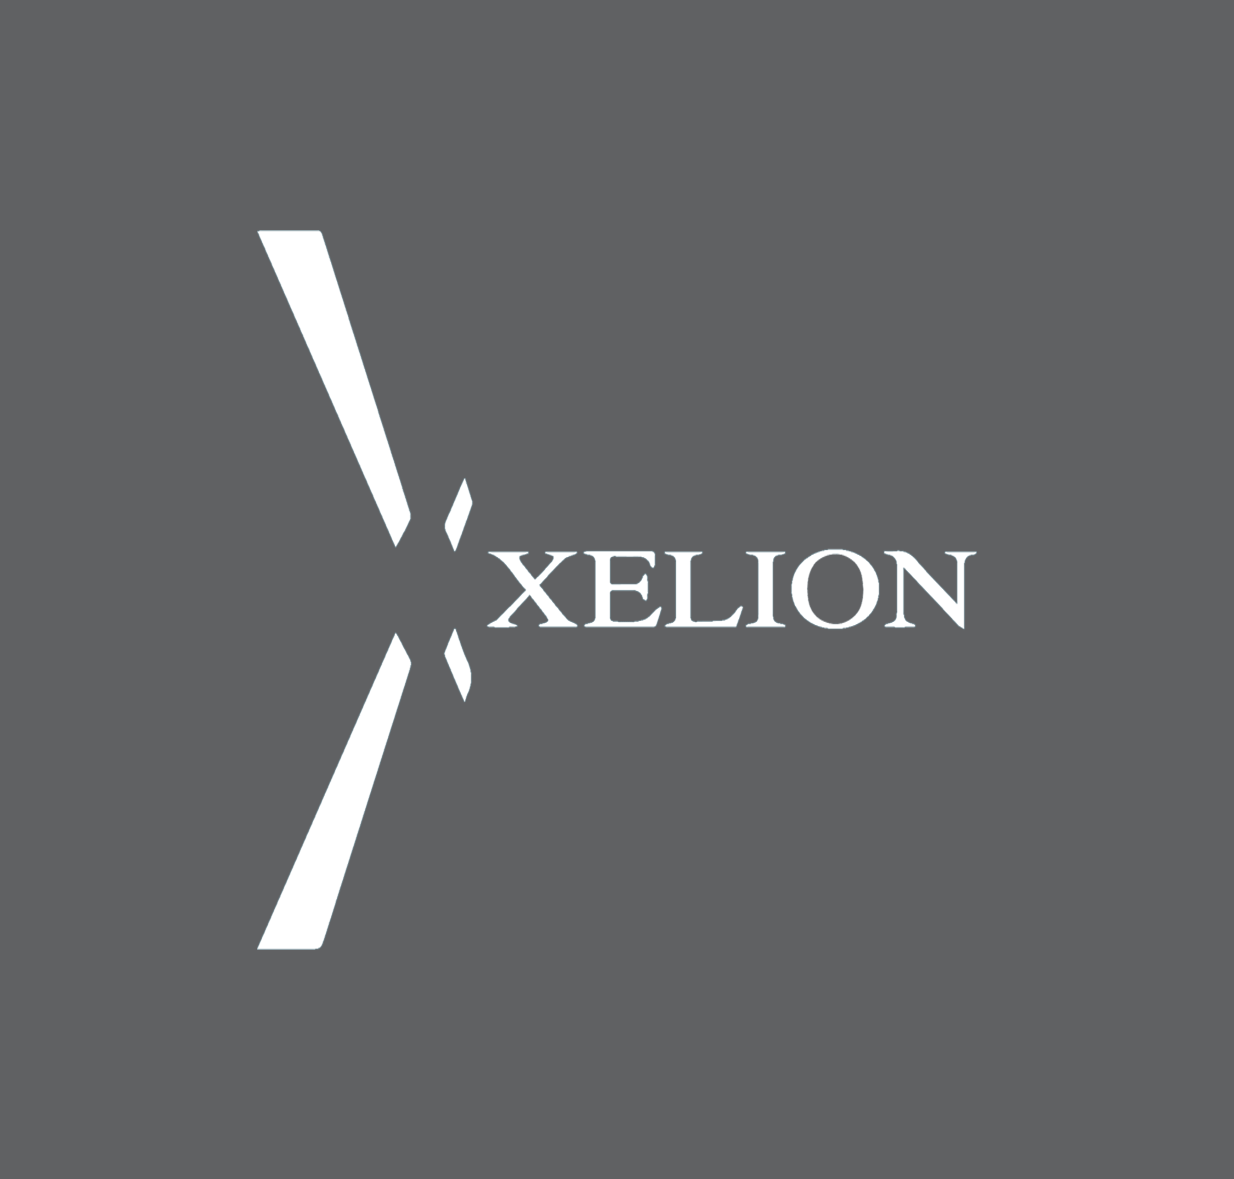 Xelion Ltd